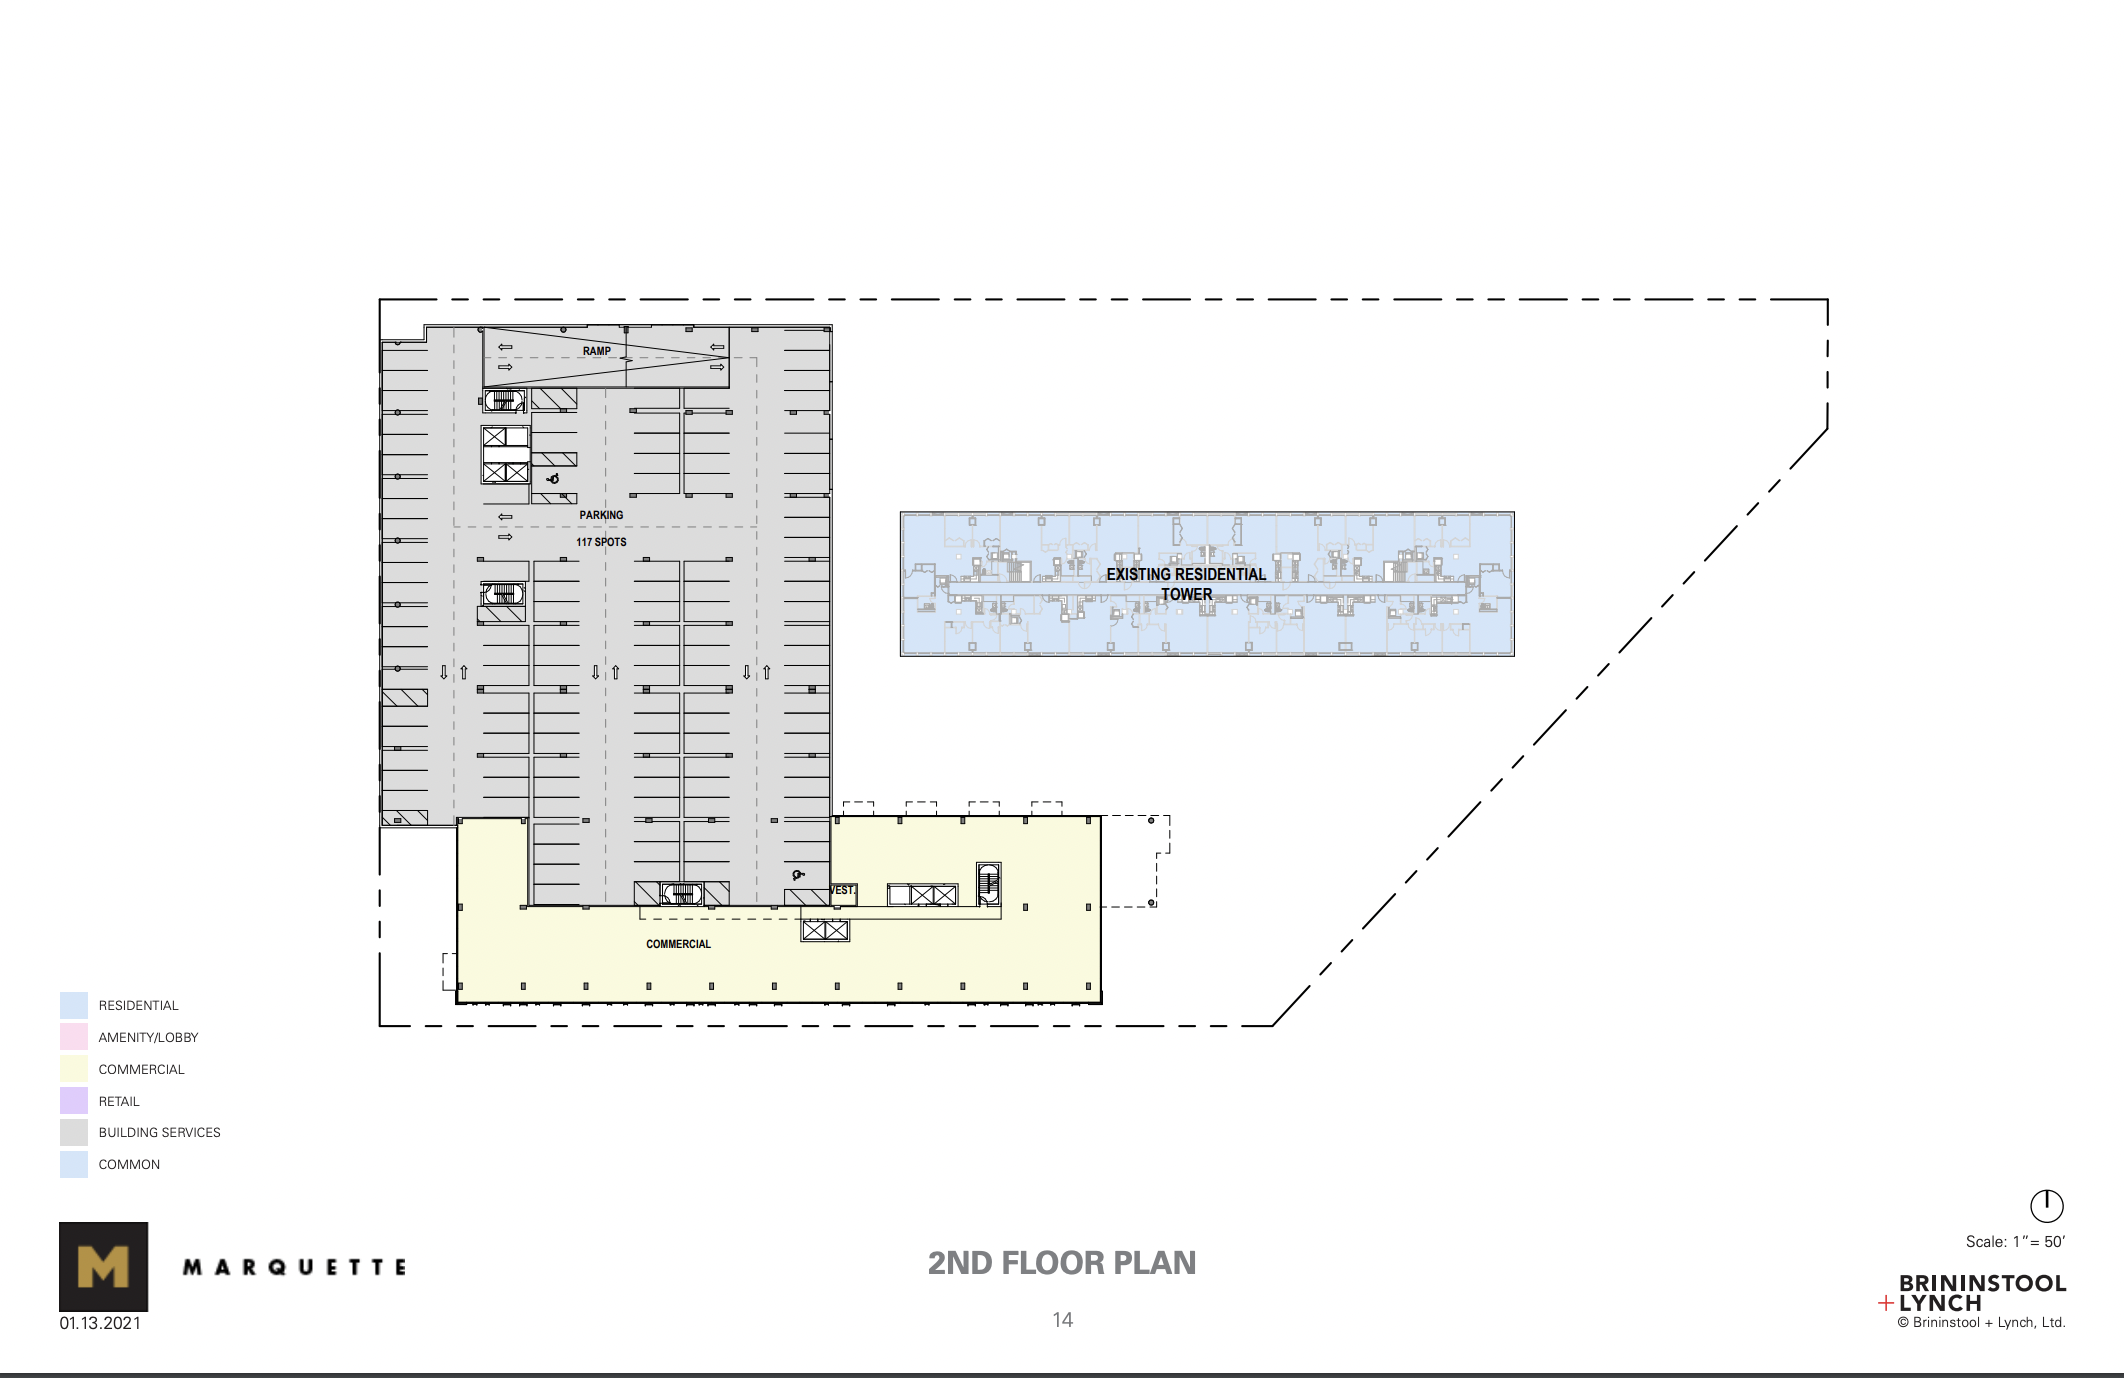 Second floor in masterplan (513 S Damen Avenue in upper left)